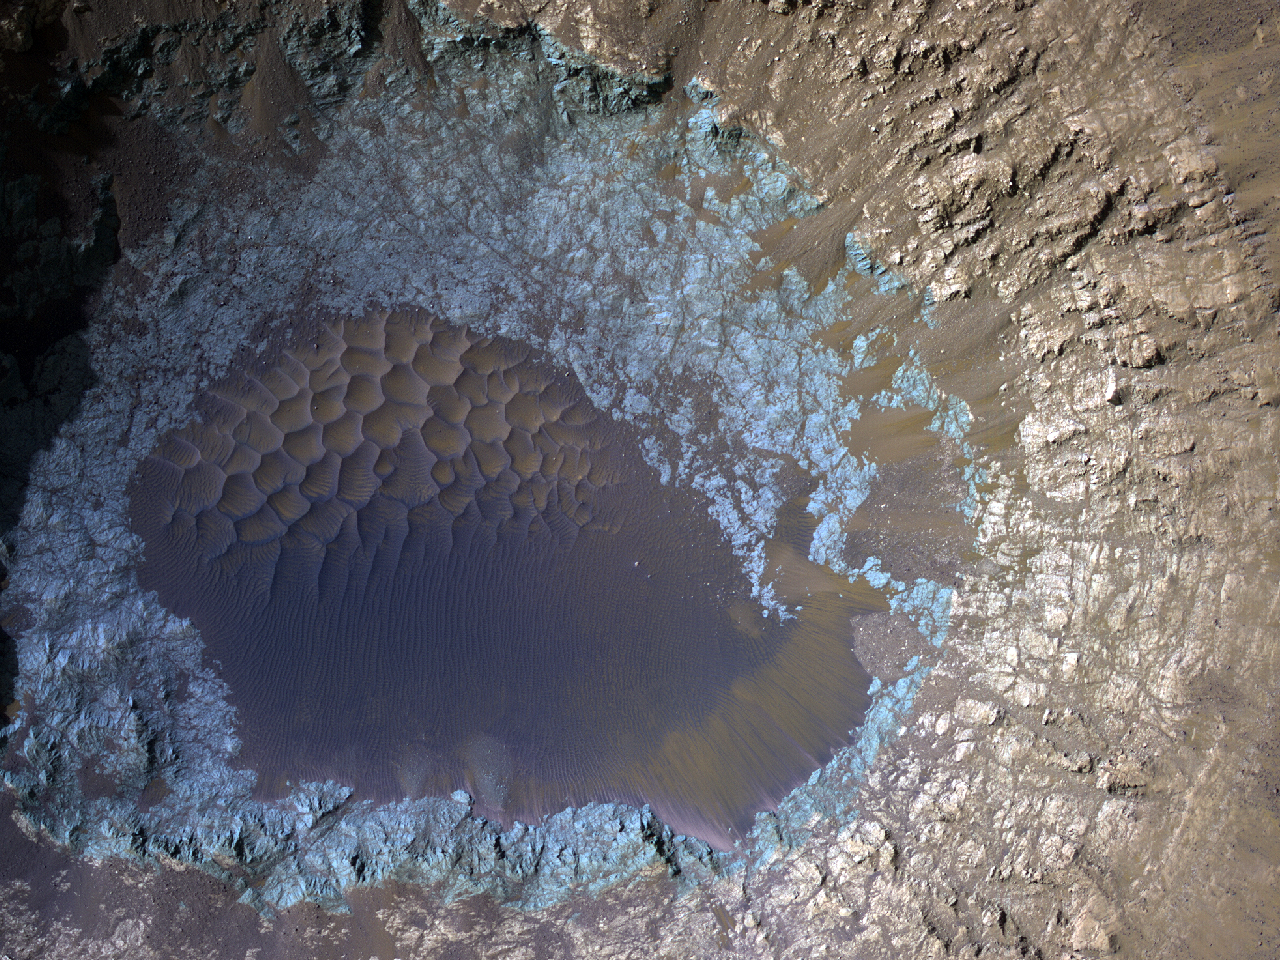 Çarpma kraterinin iç bölgesinde ortaya çıkmış ana kayaç